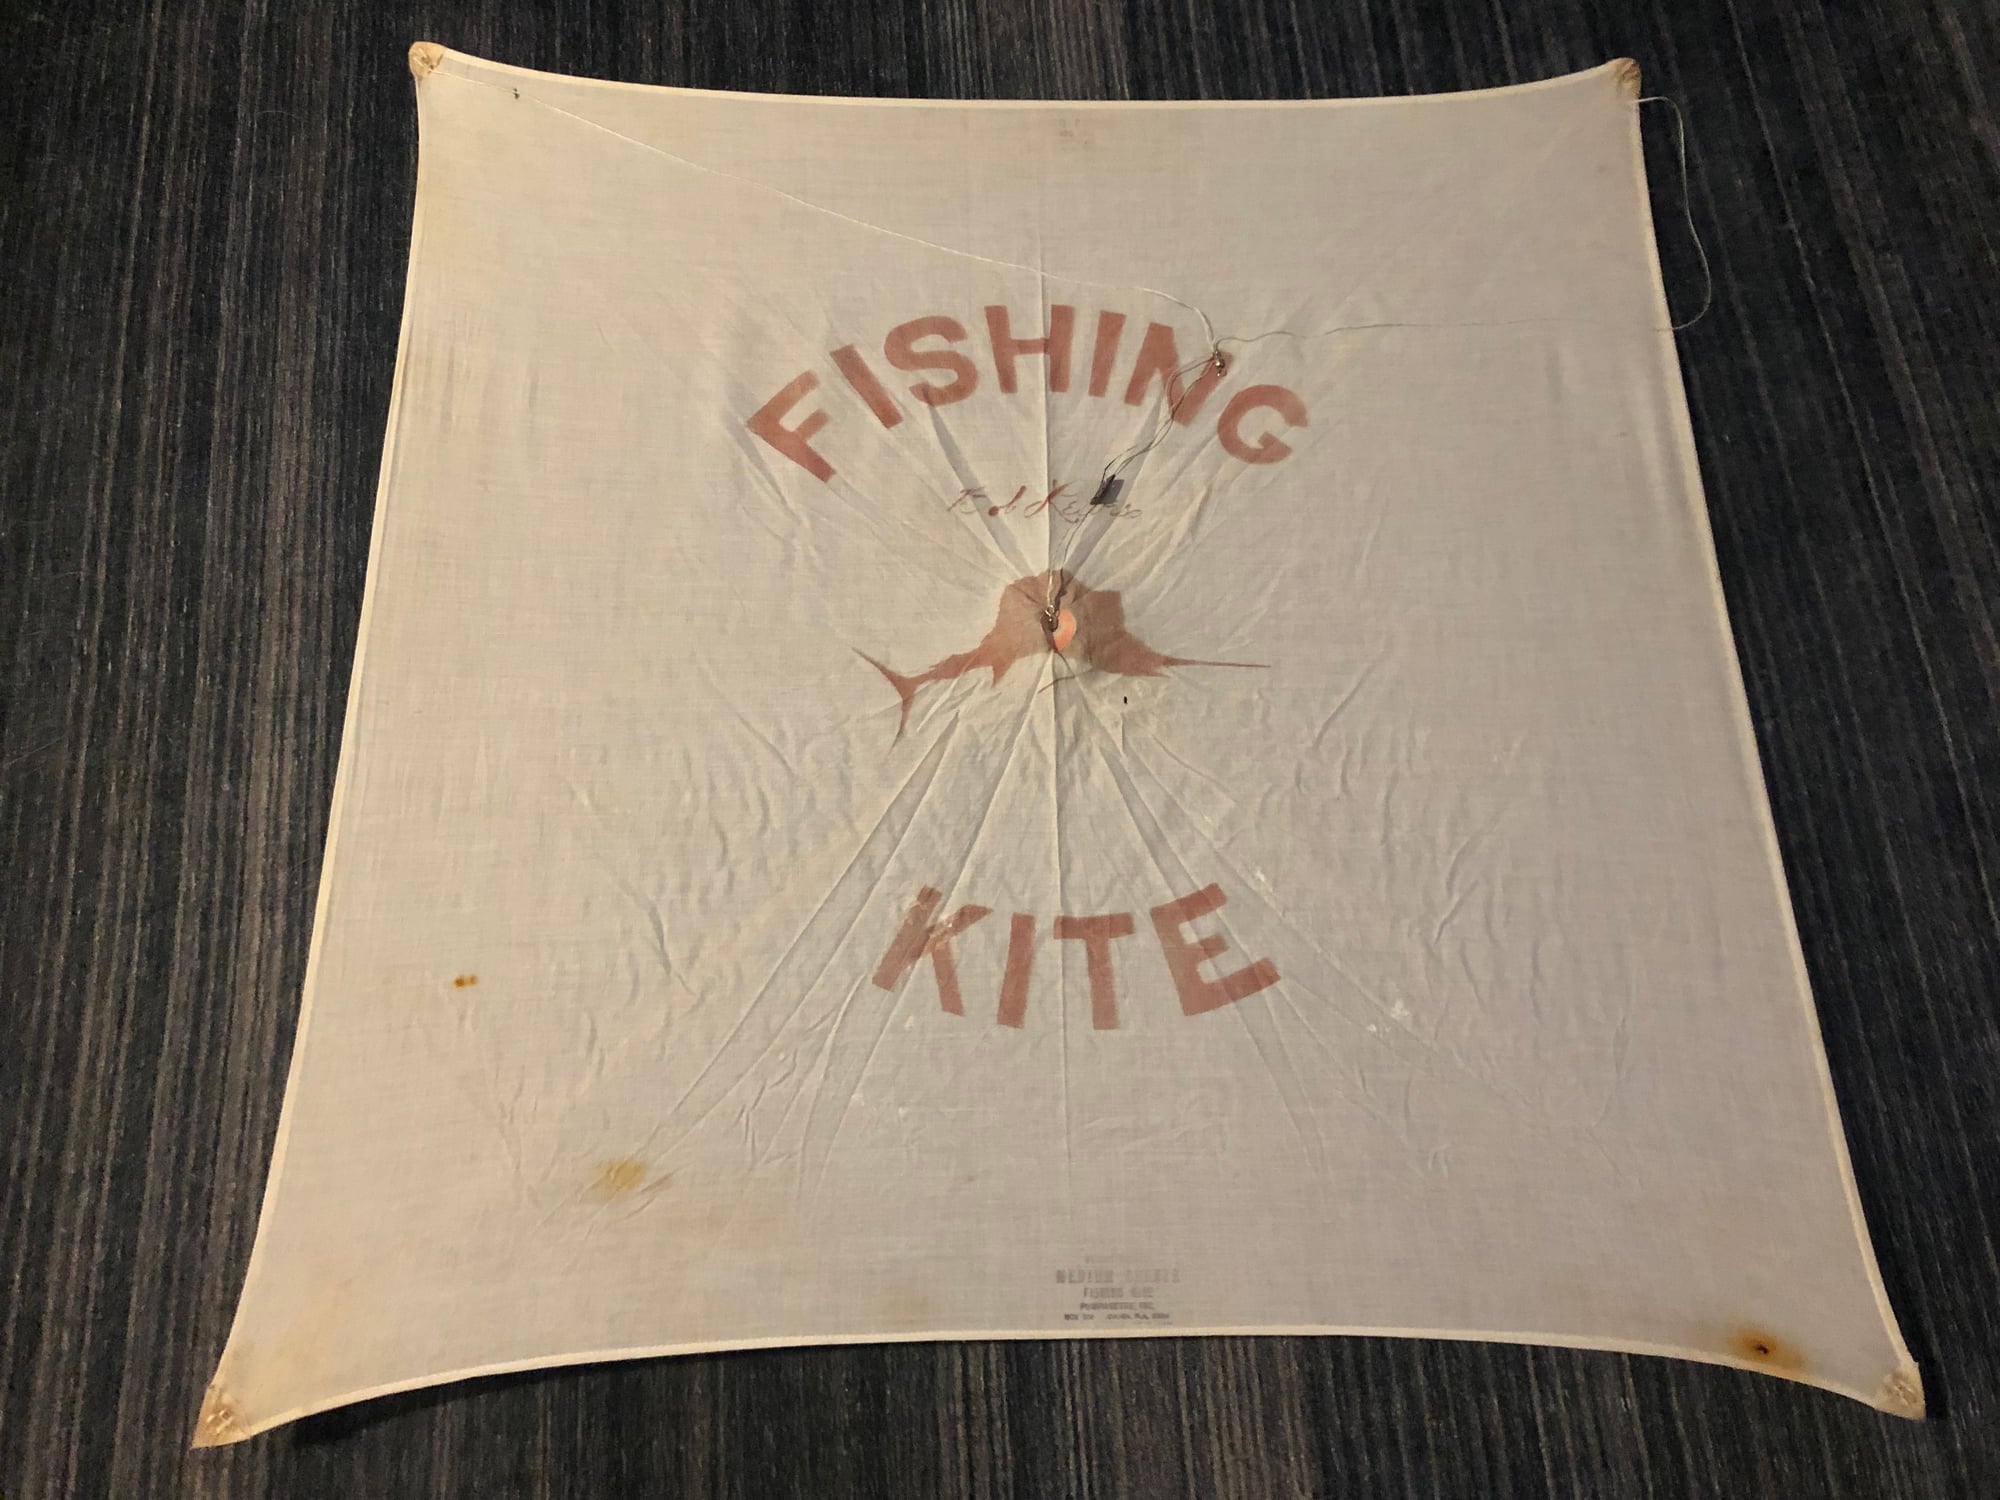 LEWIS FISHING KITES